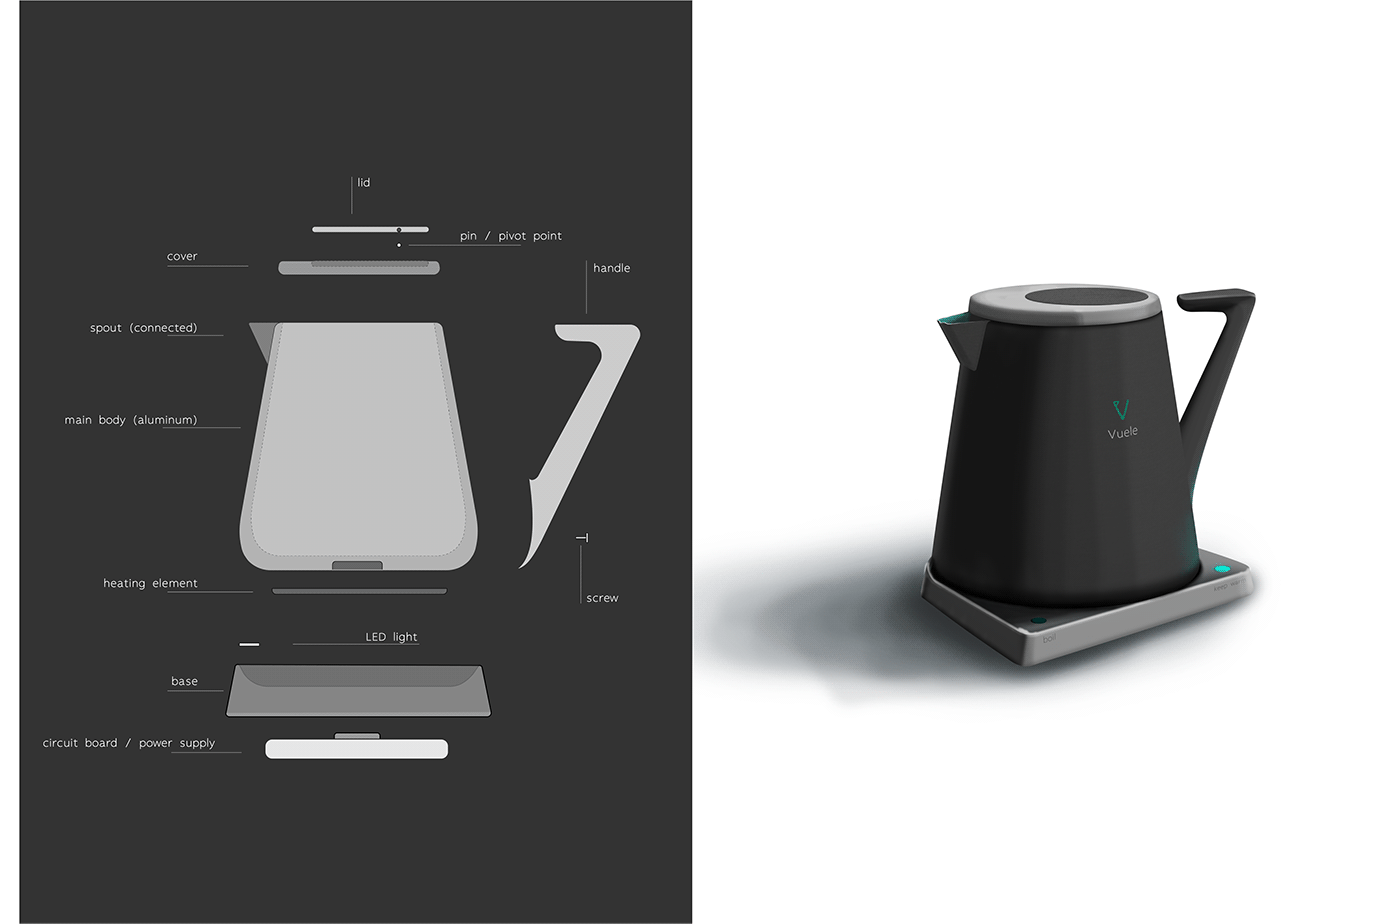 Coffee Grinder Design Form Inspired Design Form Project industrial design  kettle design Matthew Derry mug design Photoshop Rendering product design 